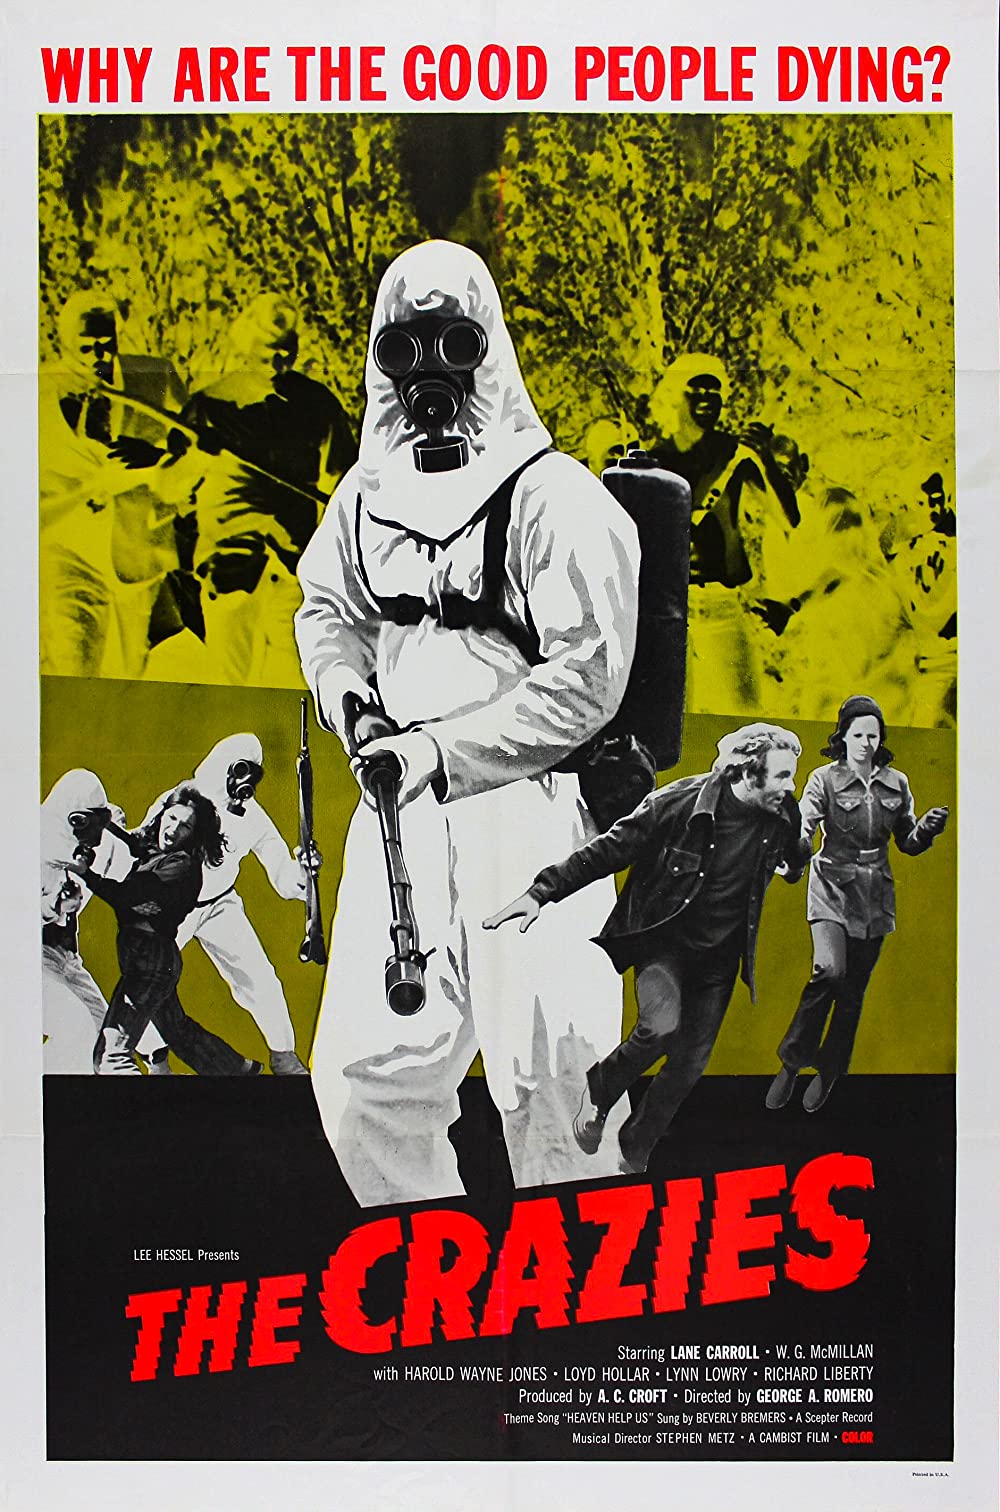 Filmbeschreibung zu The Crazies (1973)